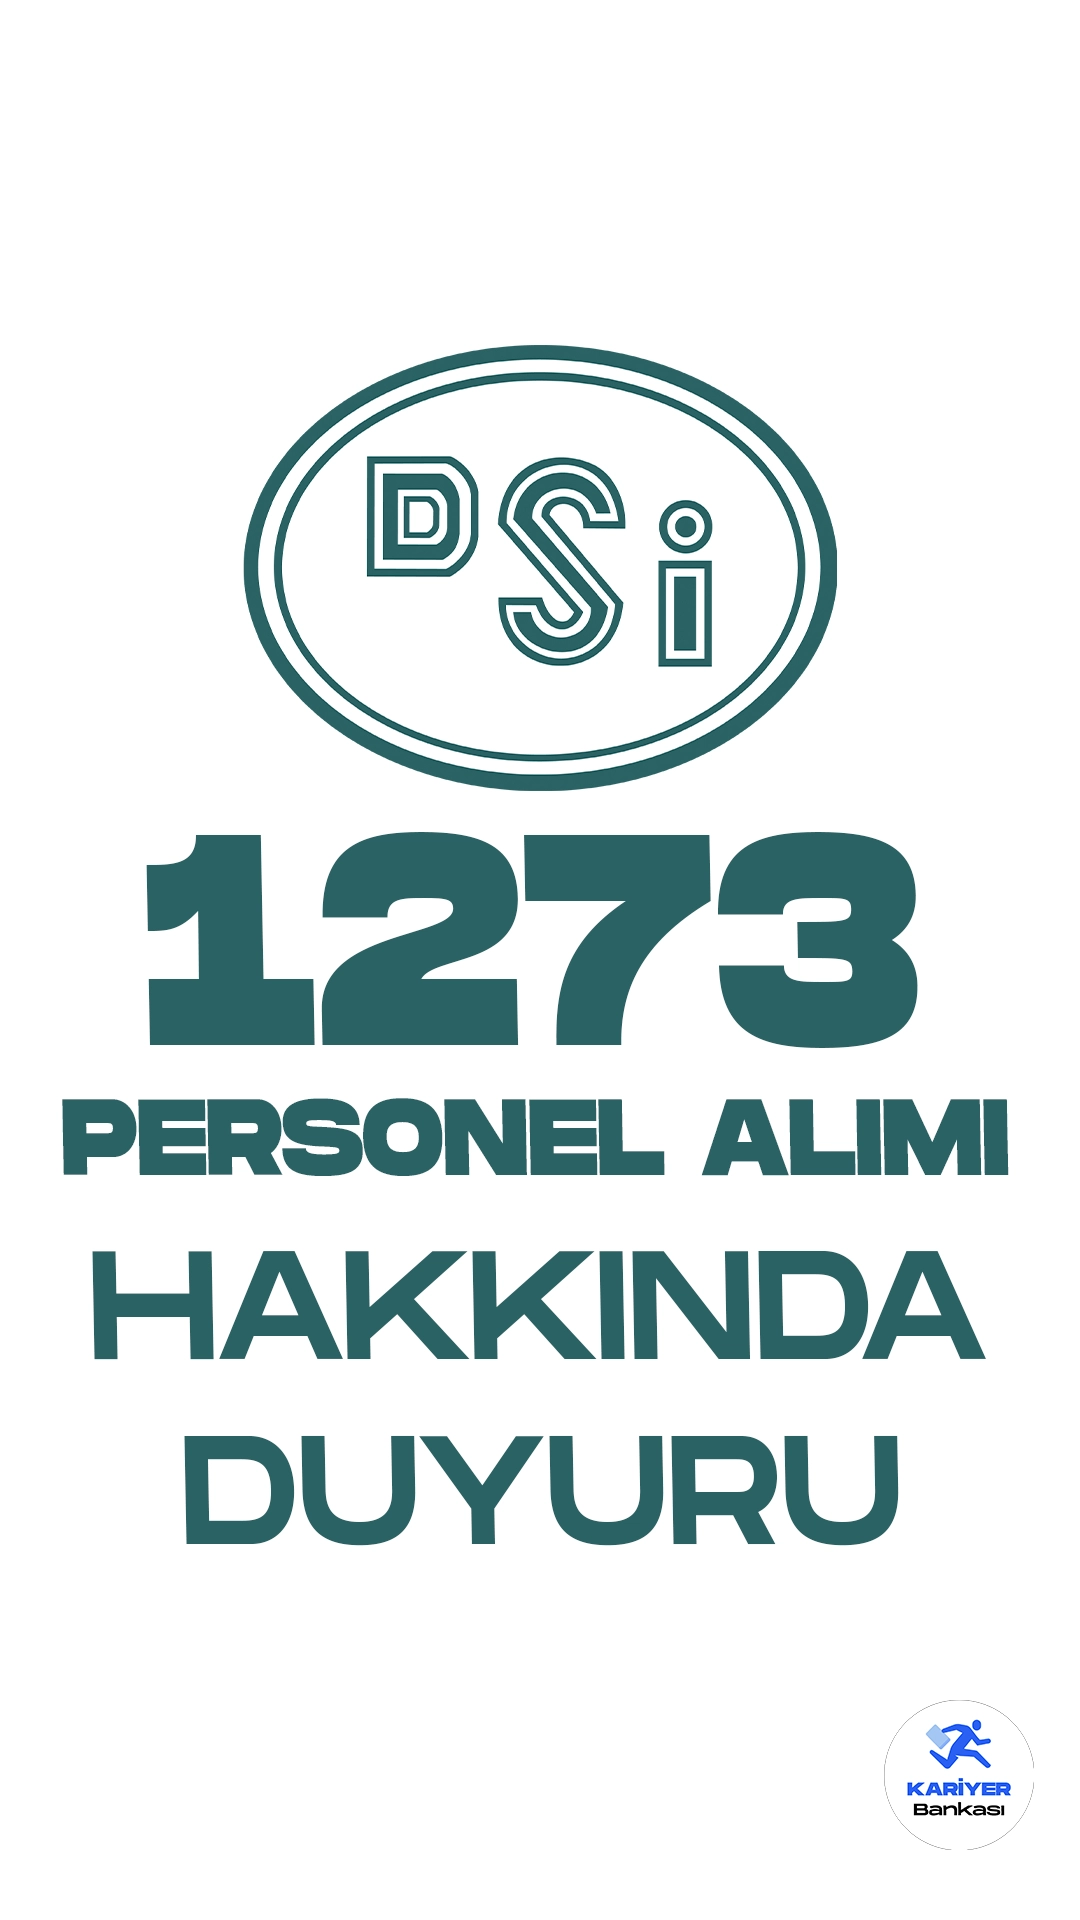 DSİ 1273 Personel Alımı Hakkında Duyuru Yayımlandı. Devlet Su İşleri (DSİ) resmi sayfasından yayımlanan son dakika duyurusunda, 1273 sözleşmeli personel pozisyonuna yedek olarak yerleşen adaylara dair listenin paylaşıldığı aktarıldı.